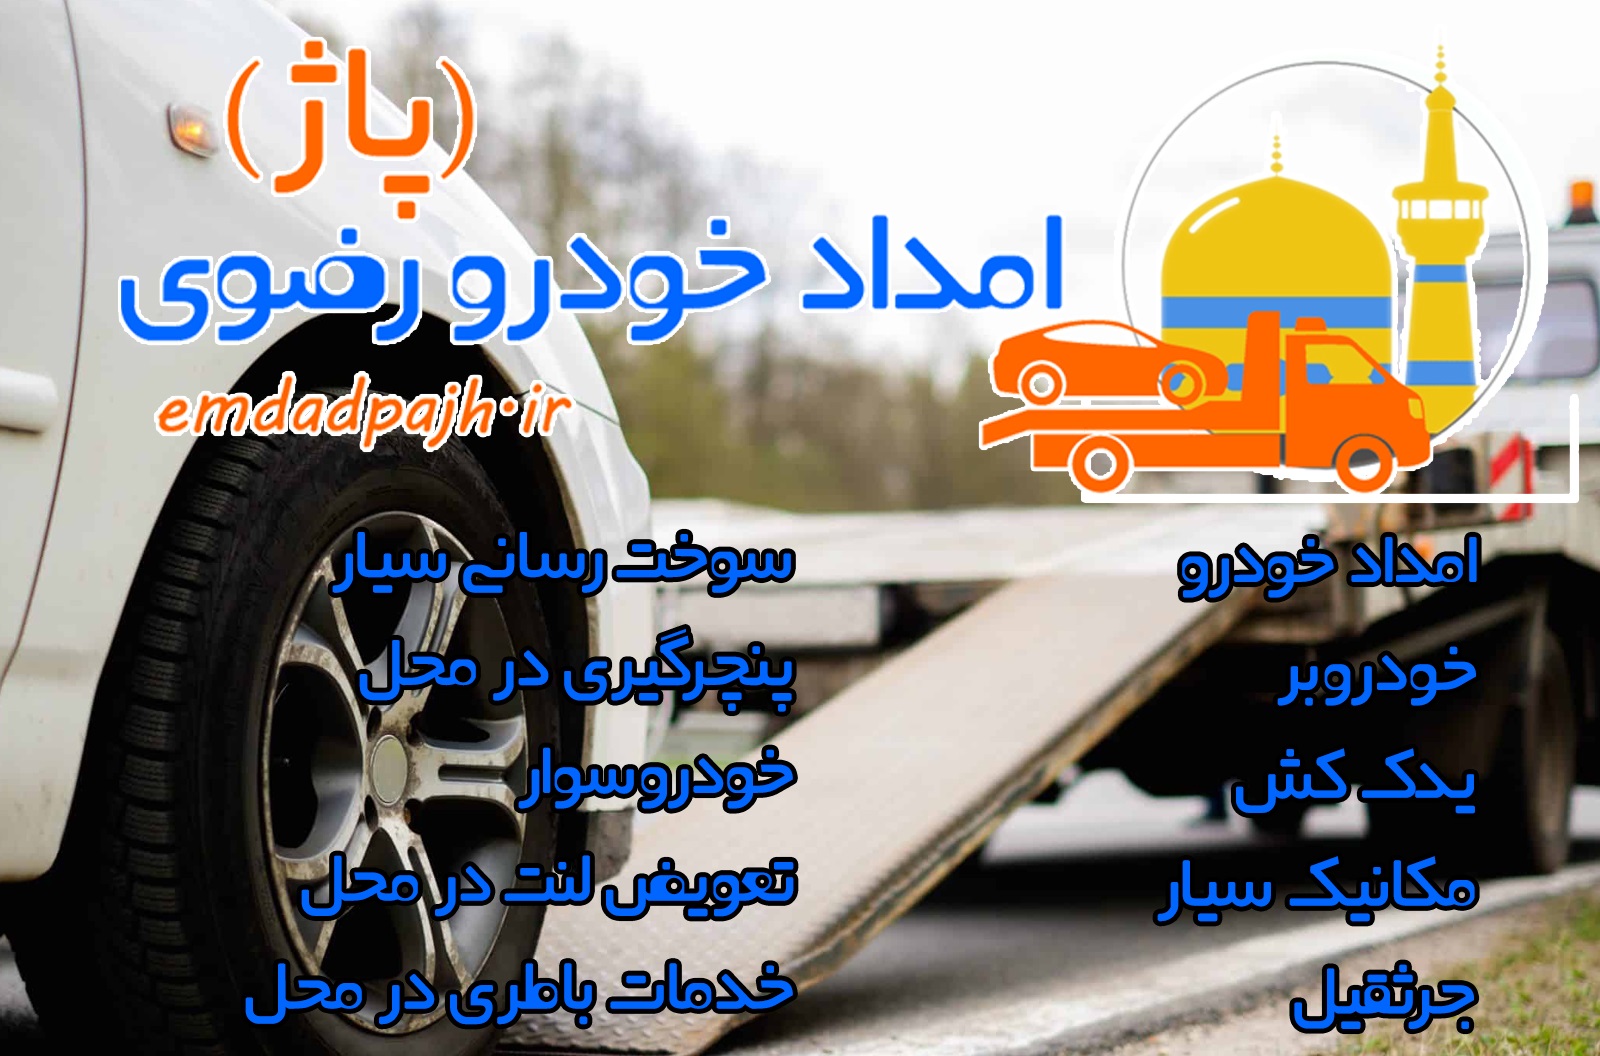 امداد خودرو کشوری - امداد خودرو رضوی - مشهد، تهران، تبریز، شیراز